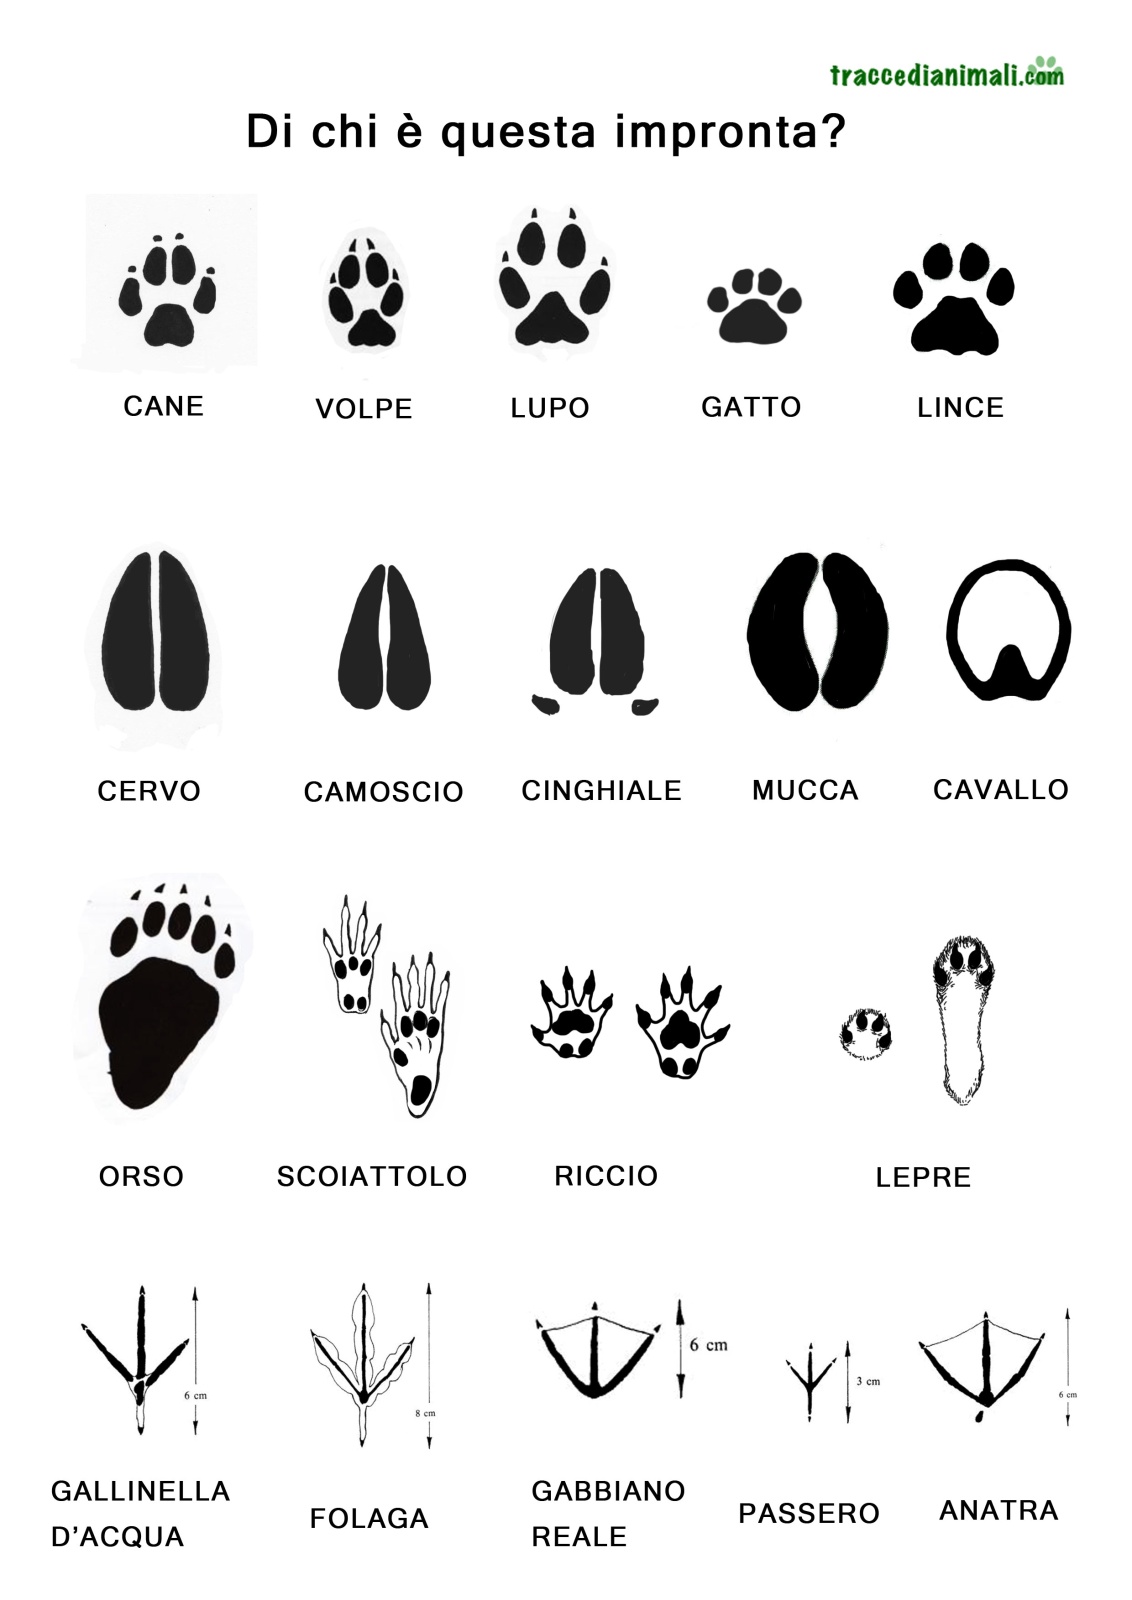 Di chi sono queste impronte? - Riconoscere le impronte degli animali in natura